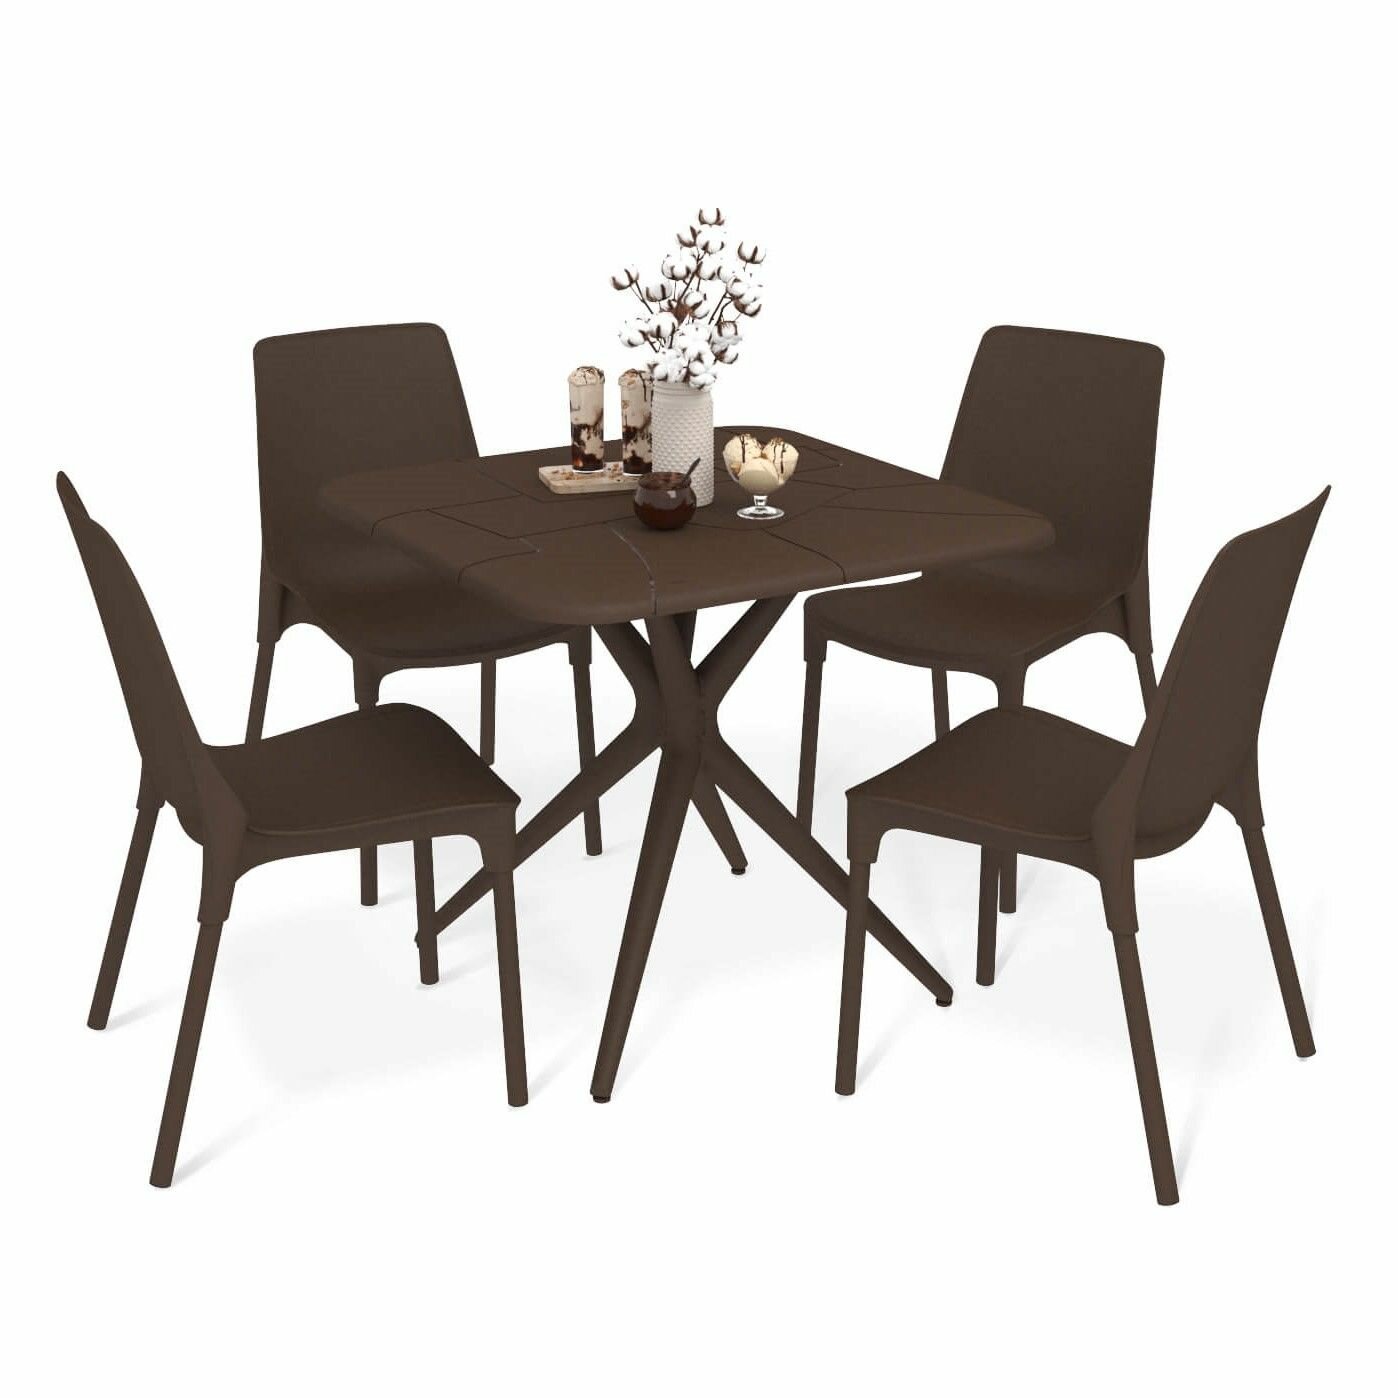 Стол и стулья для кухни стол квадратный и 4 кресла Обеденная группа для кухни стол и стулья набор садовой мебели коричневый